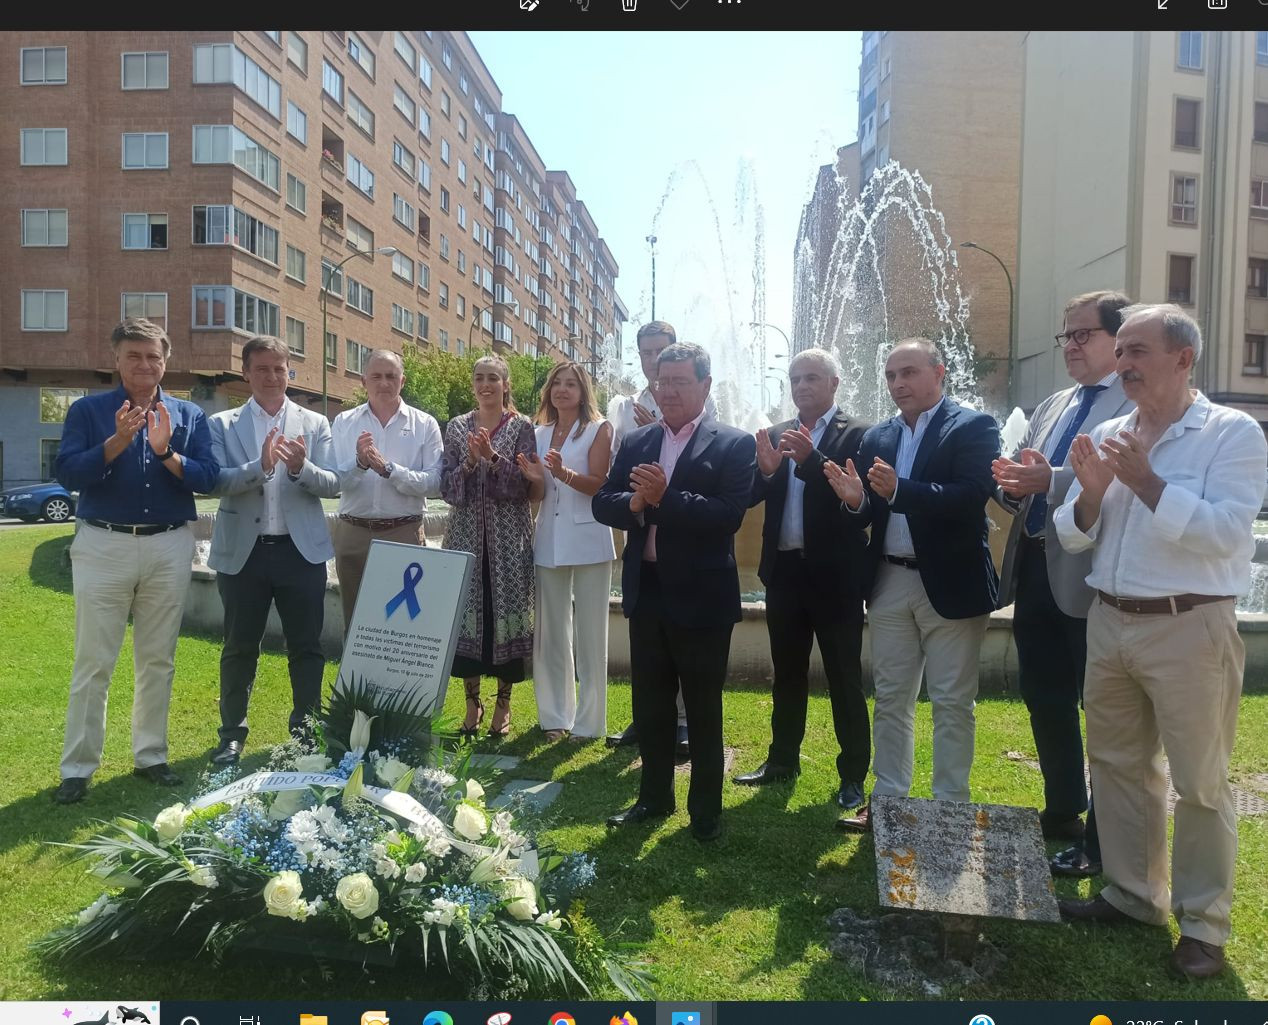 Acto de conmemoración del XXV aniversario del asesinato de Miguel Ángel Blanco organizado por el PP Burgos